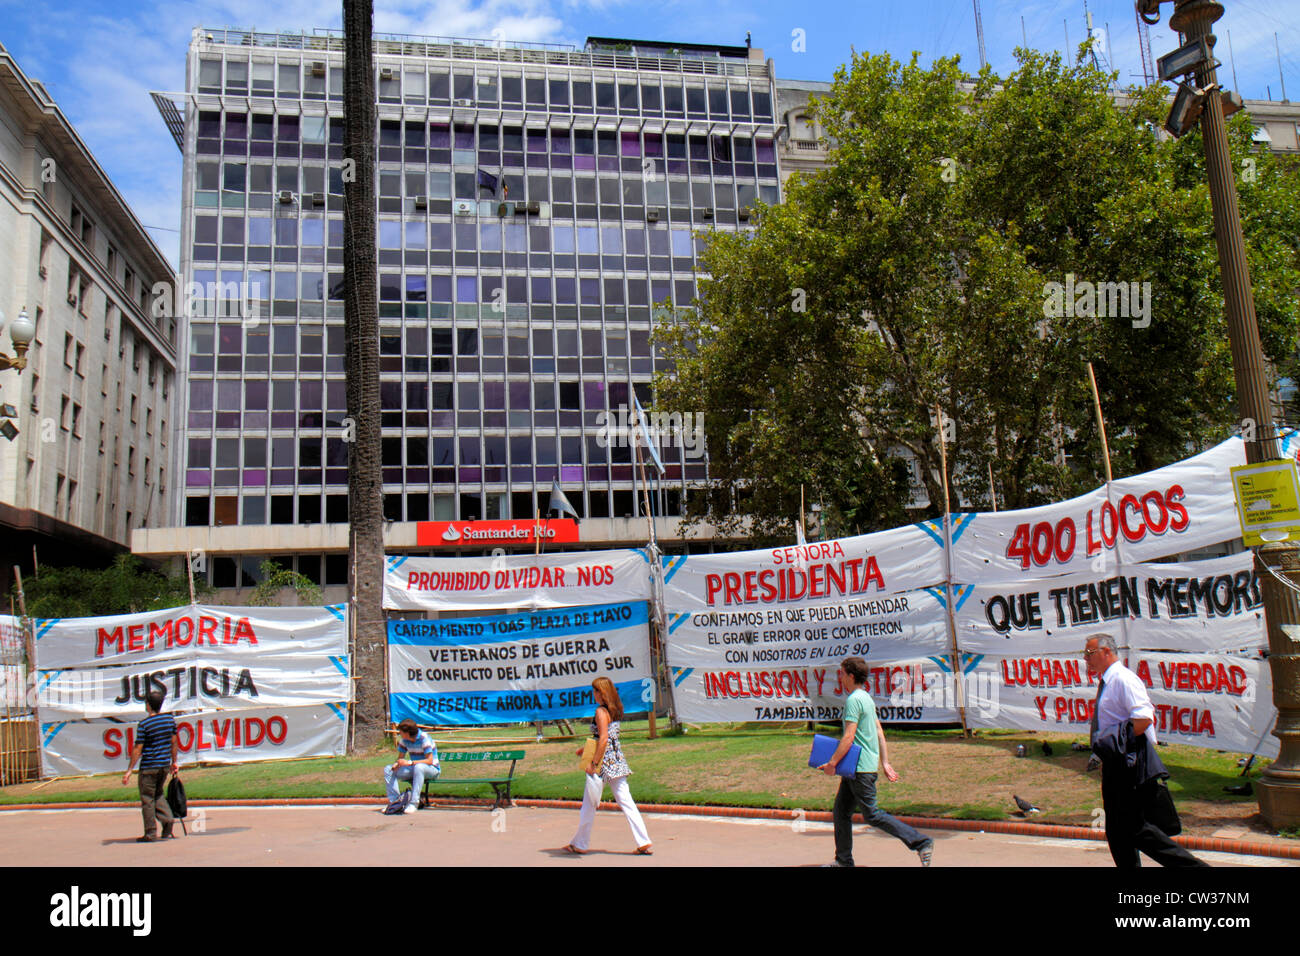 Buenos Aires Argentinien, Plaza de Mayo historischer Hauptplatz, politischer Mittelpunkt, Banner, Spanisch, Sprache, zweisprachig, Protest, hispanischer Mann Männer männlich, Frau weiblich w Stockfoto